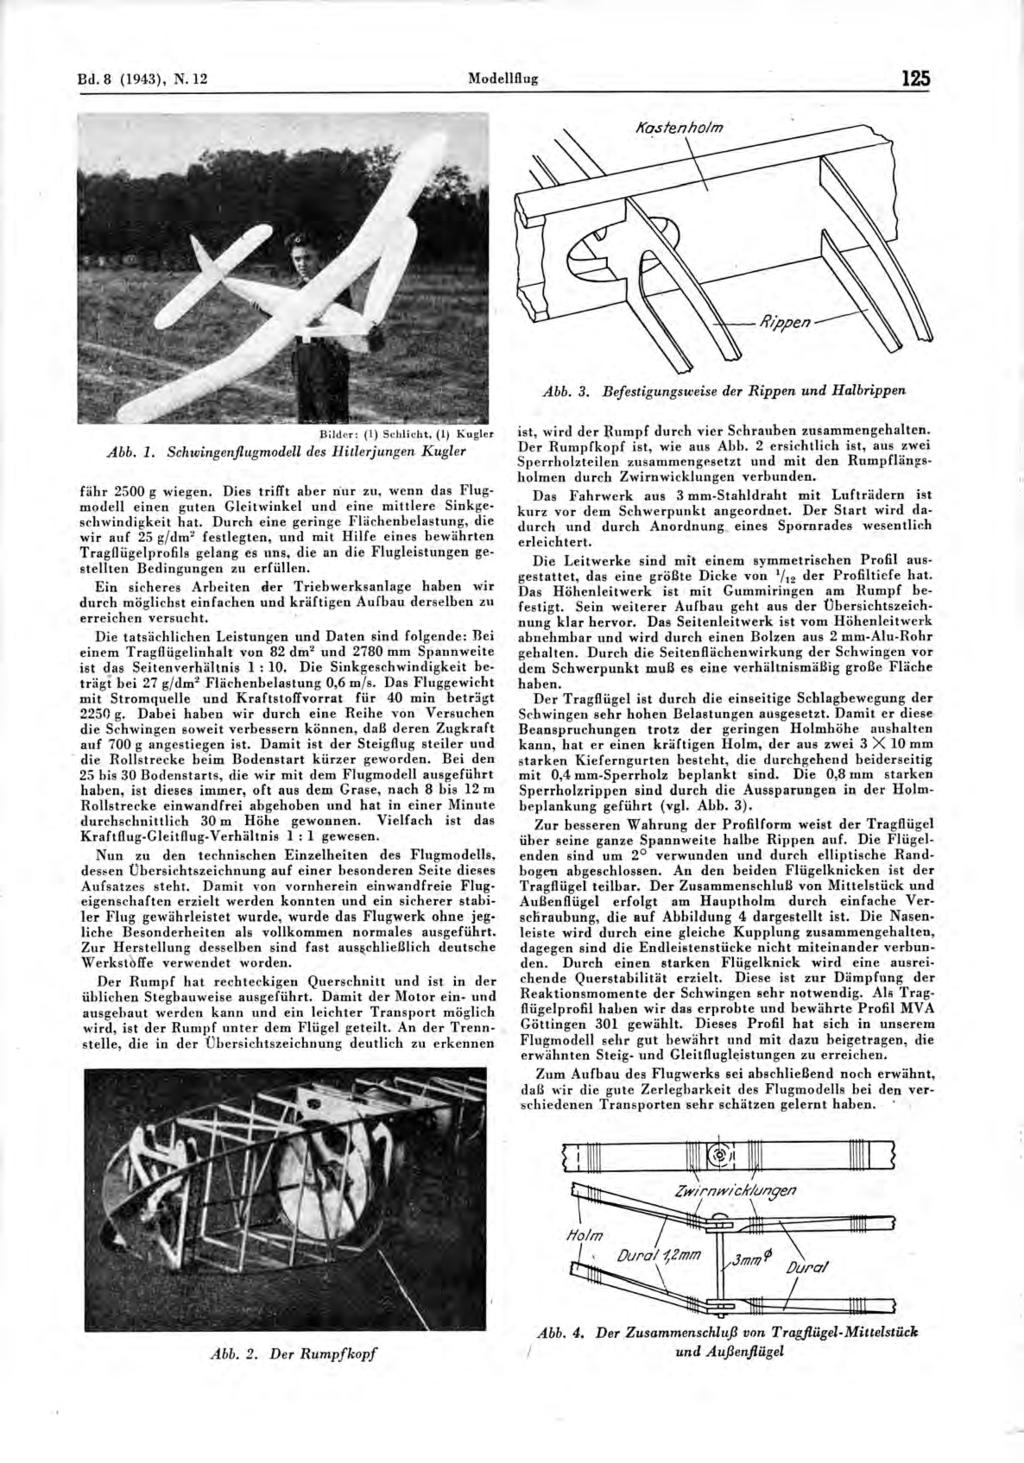 Bd. 8 (1943), N.12 Modellflug 125 Abb. 3. Befestigungsweise der Rippen und Halbrippen Bilder: (1) Schlicht, (1) Kugler Abb. 1. Schwingenflugmodell des Hitlerjungen Kugler fähr 2500 g wiegen.